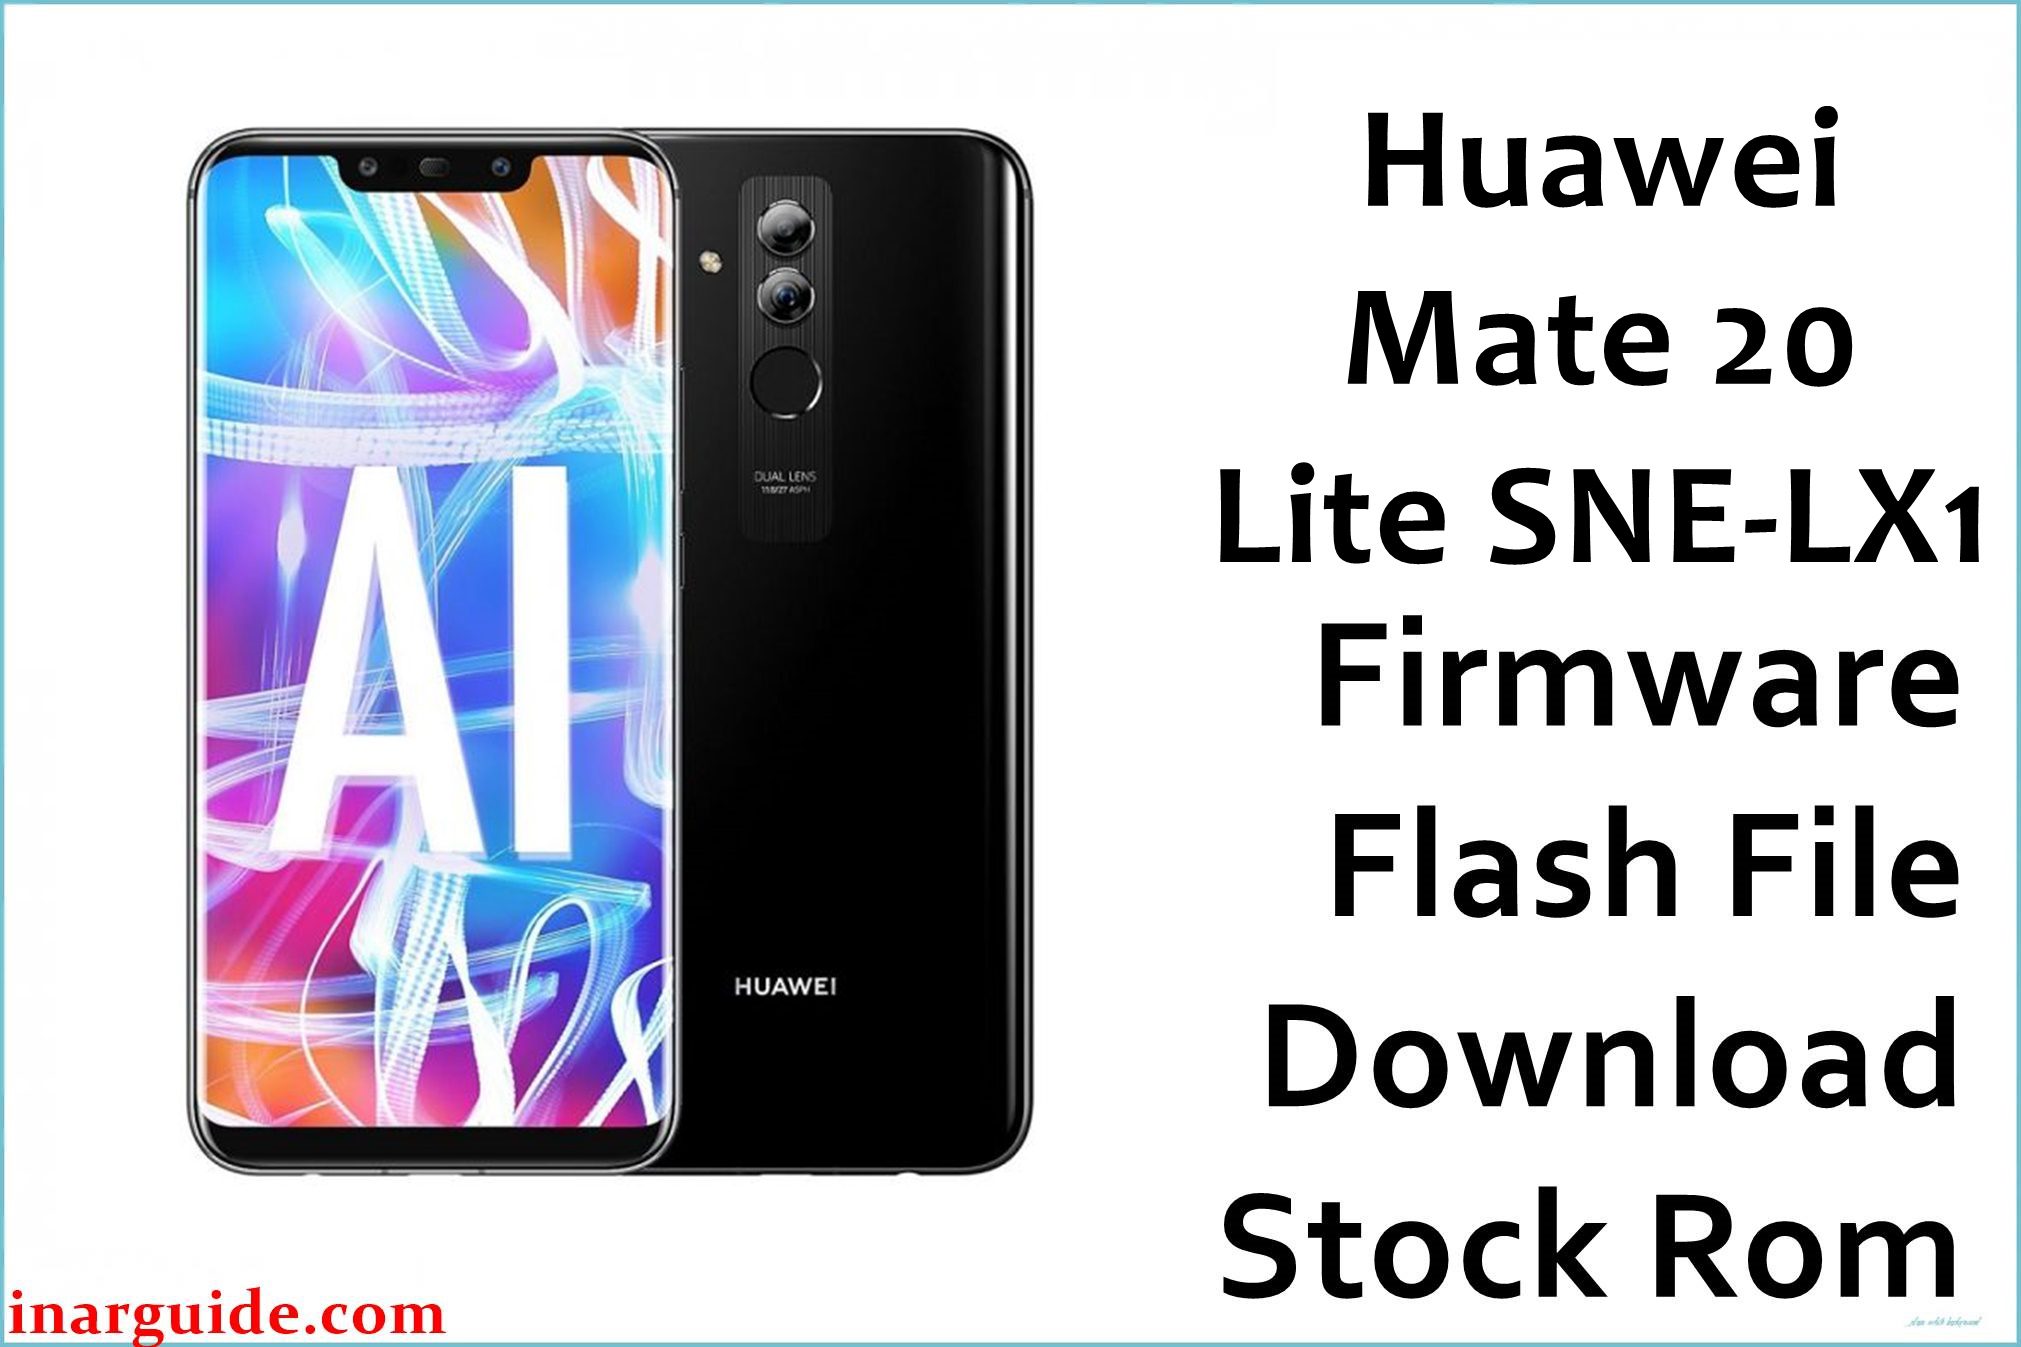 Huawei Mate 20 Lite SNE LX1